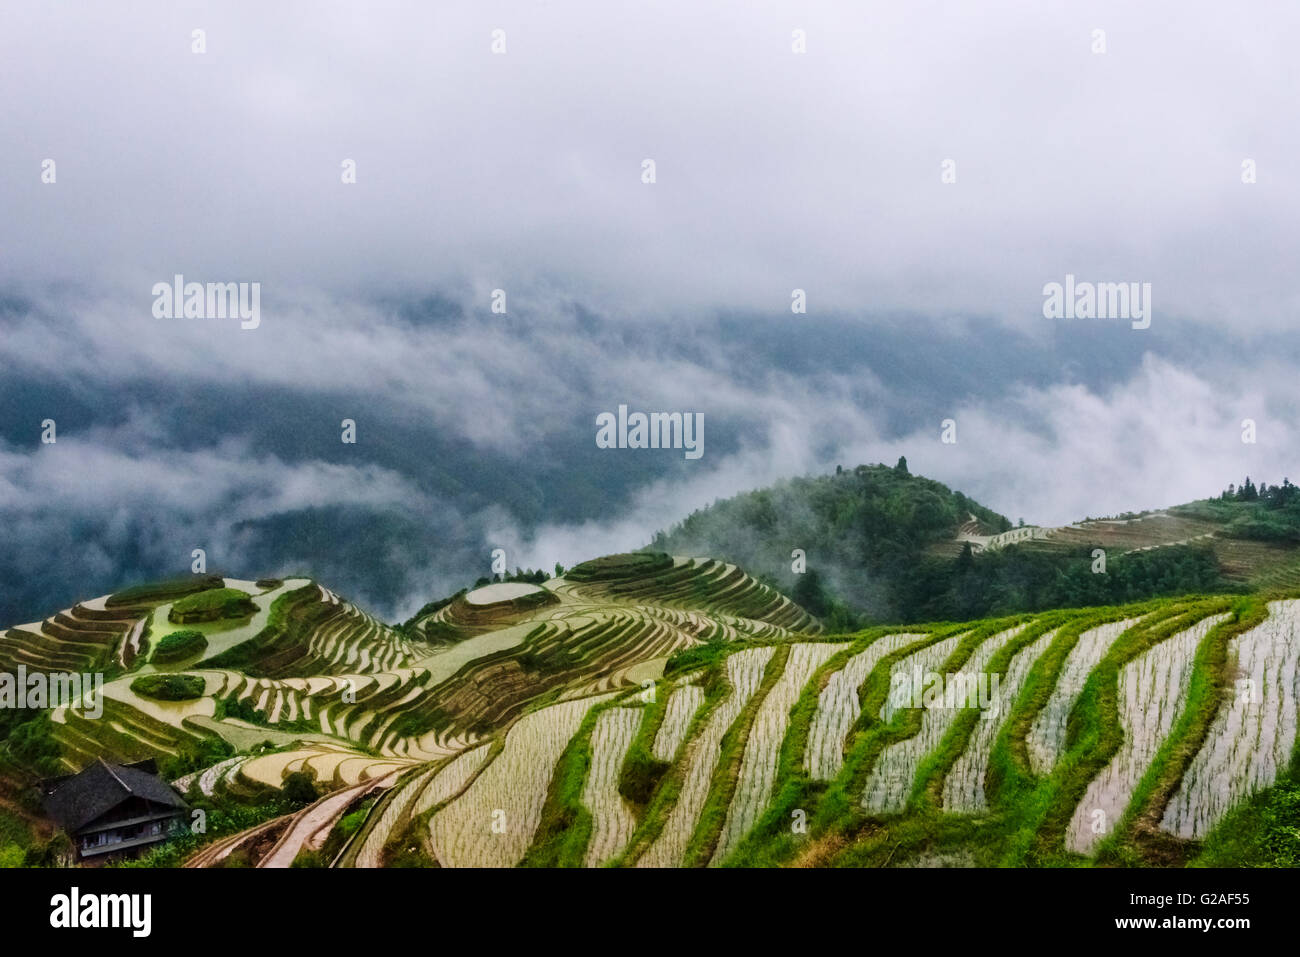 Riempito di acqua terrazze di riso nella nebbia di mattina in montagna, Longsheng, provincia di Guangxi, Cina Foto Stock